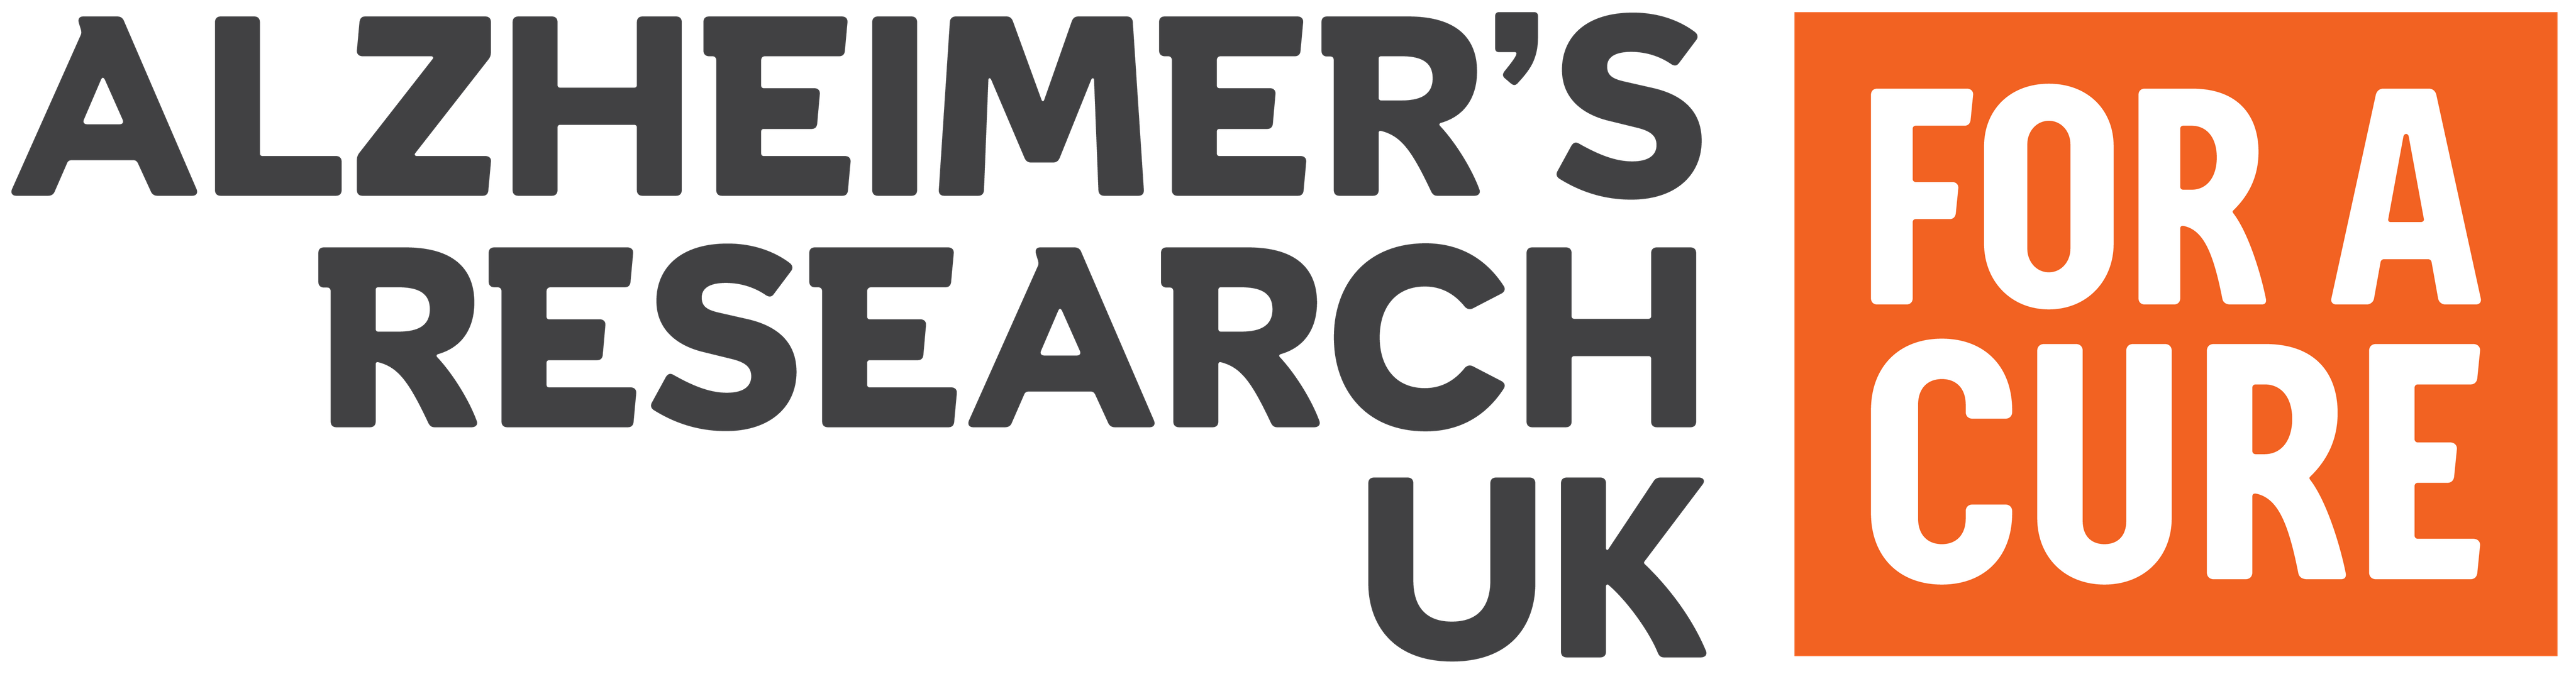 Alzheimers Research UK Logo